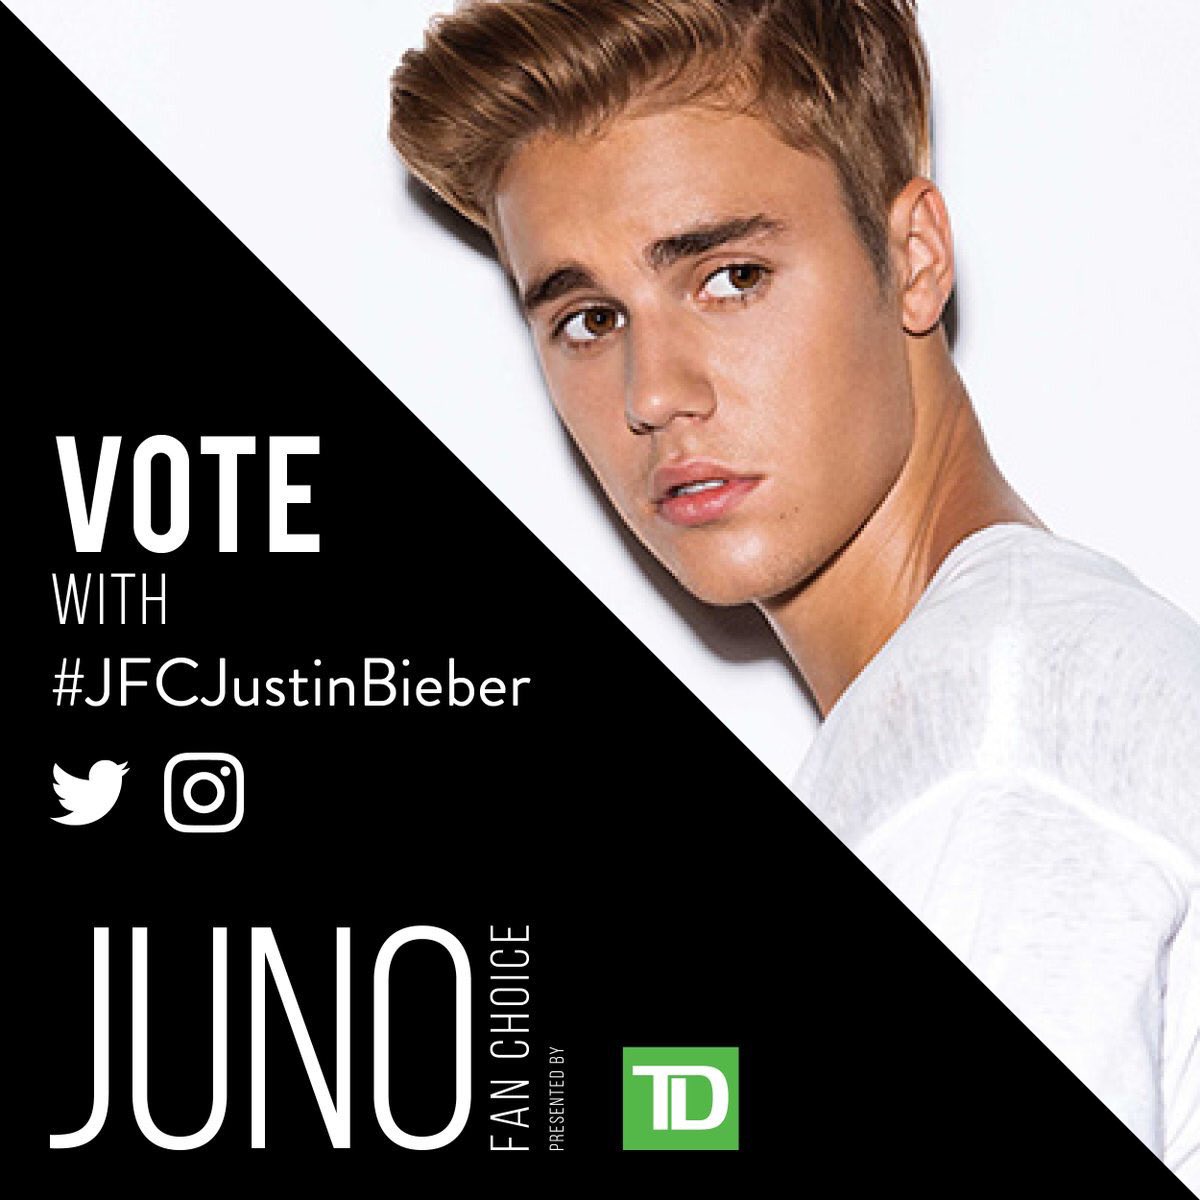 VOTE Justin Bieber (@Votes4JBieber) | Twitter1200 x 1200